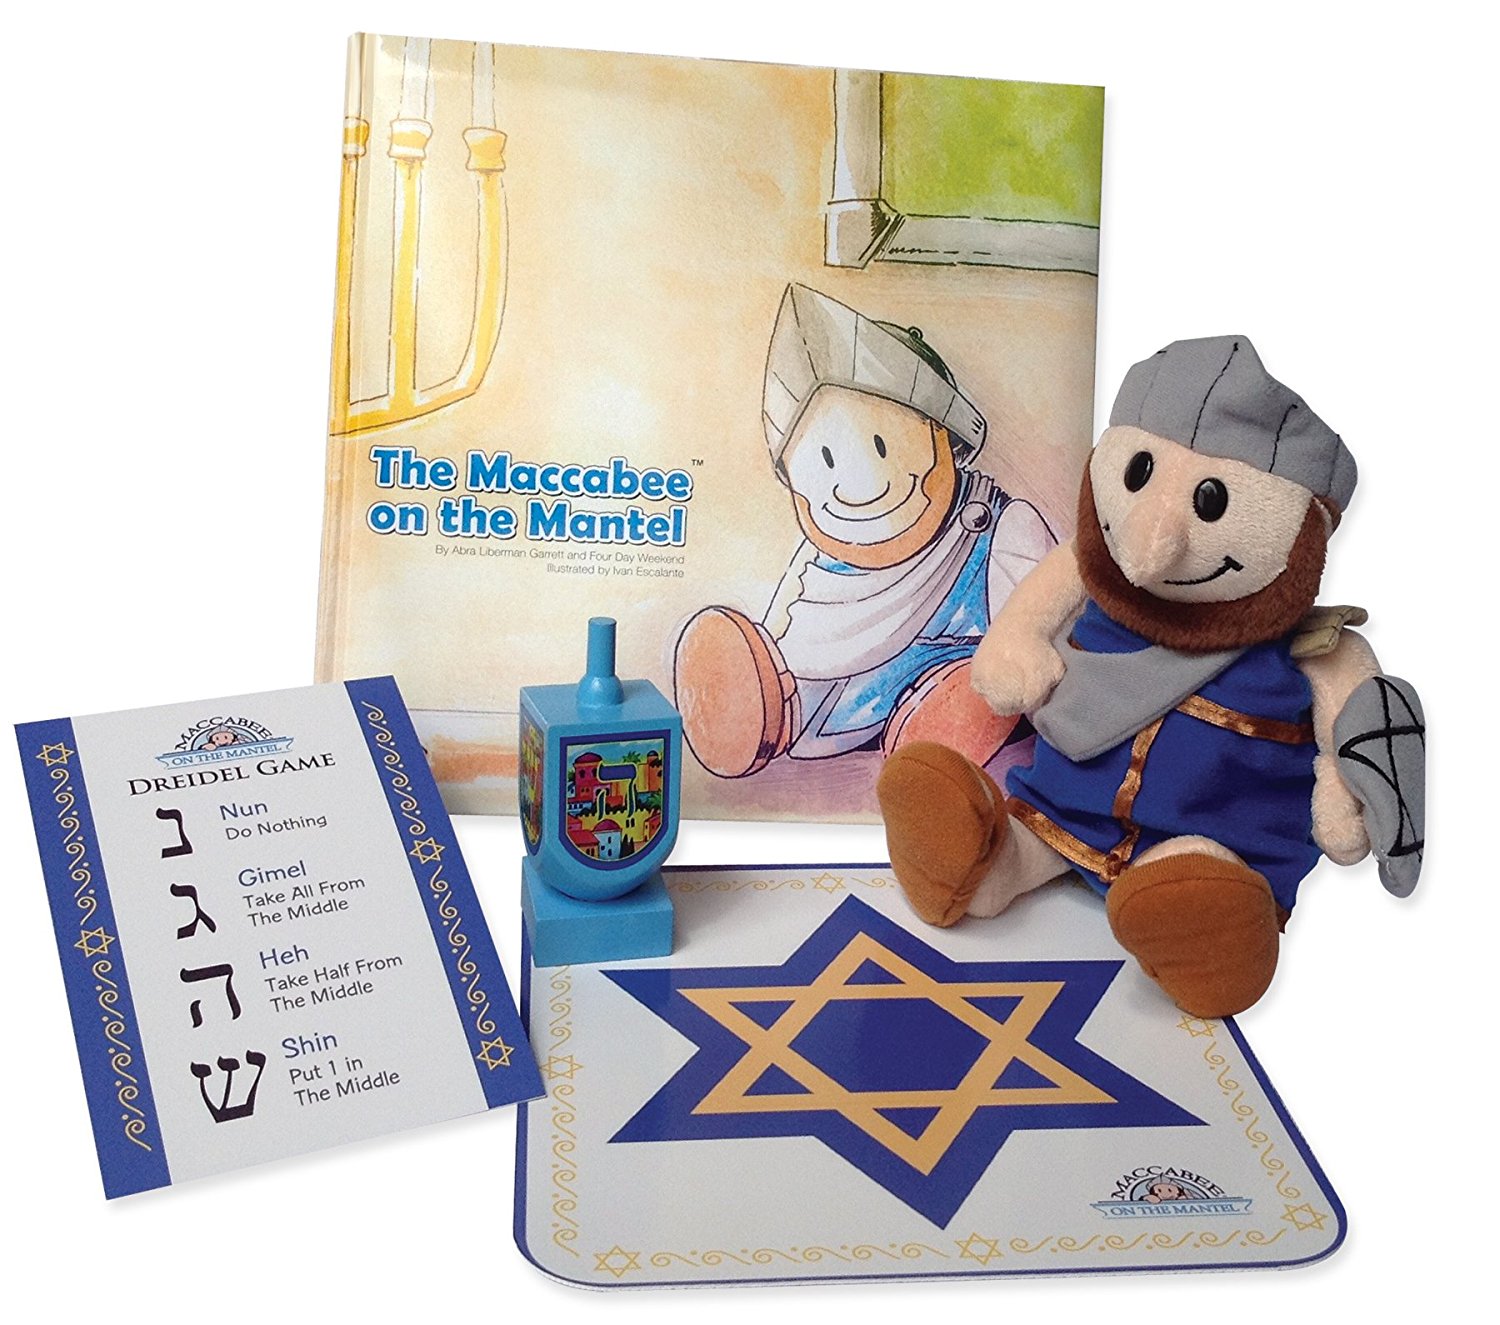 Maccabee’s Hanukkah Gift Set – Just $12.00!